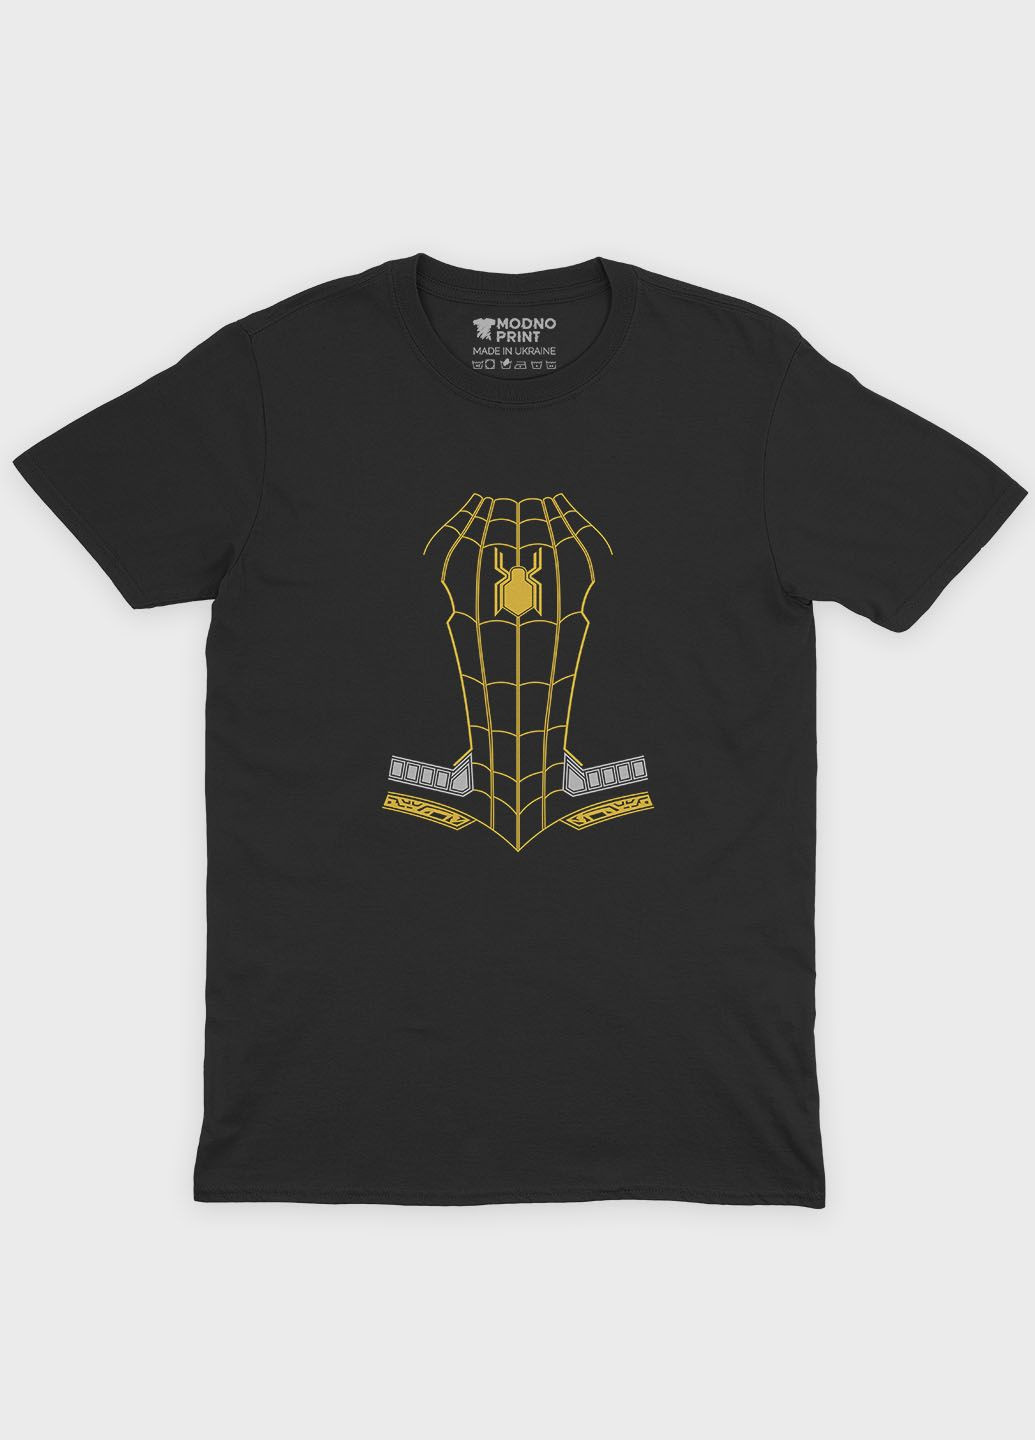 Черная демисезонная футболка для мальчика с принтом супергероя - человек-паук (ts001-1-bl-006-014-083-b) Modno